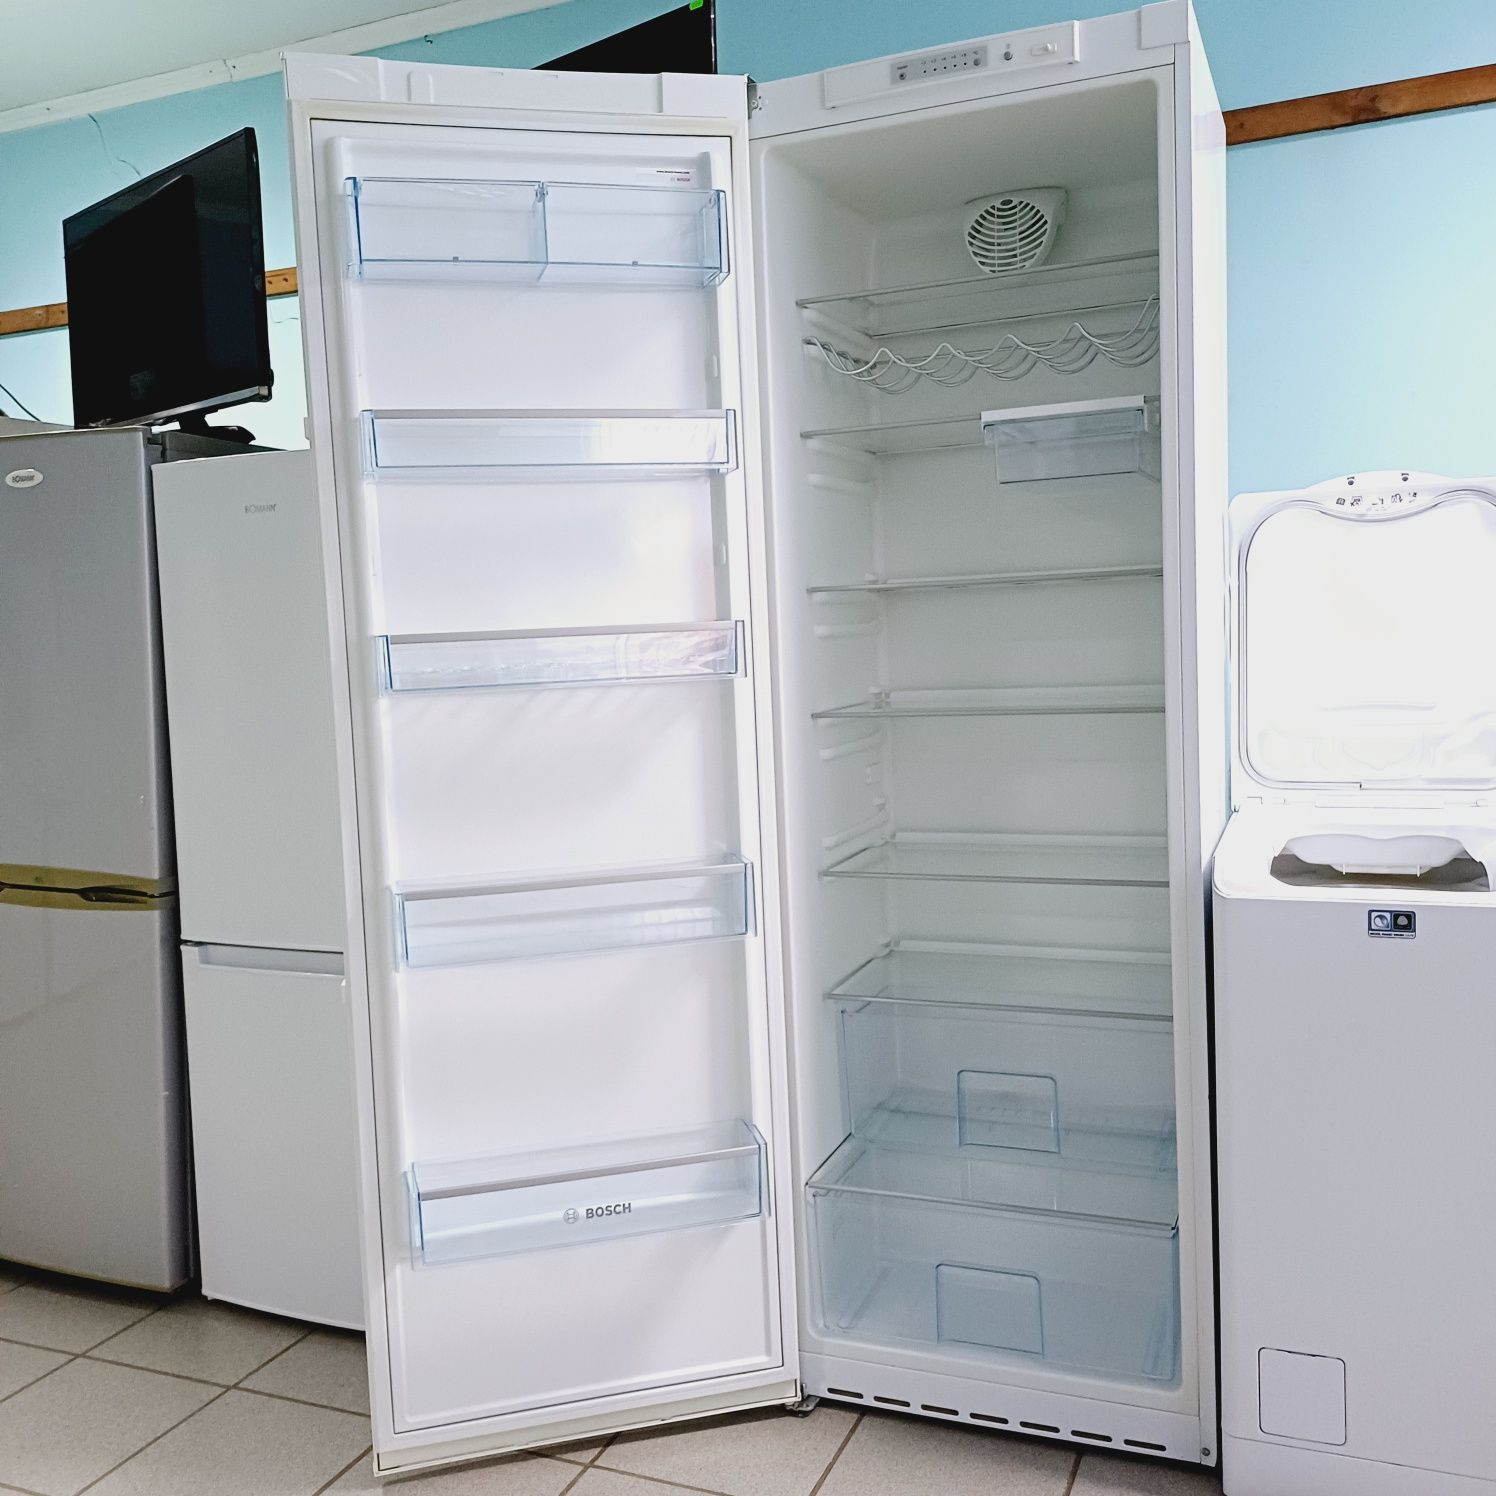 Великий холодильник BOSCH  185 см